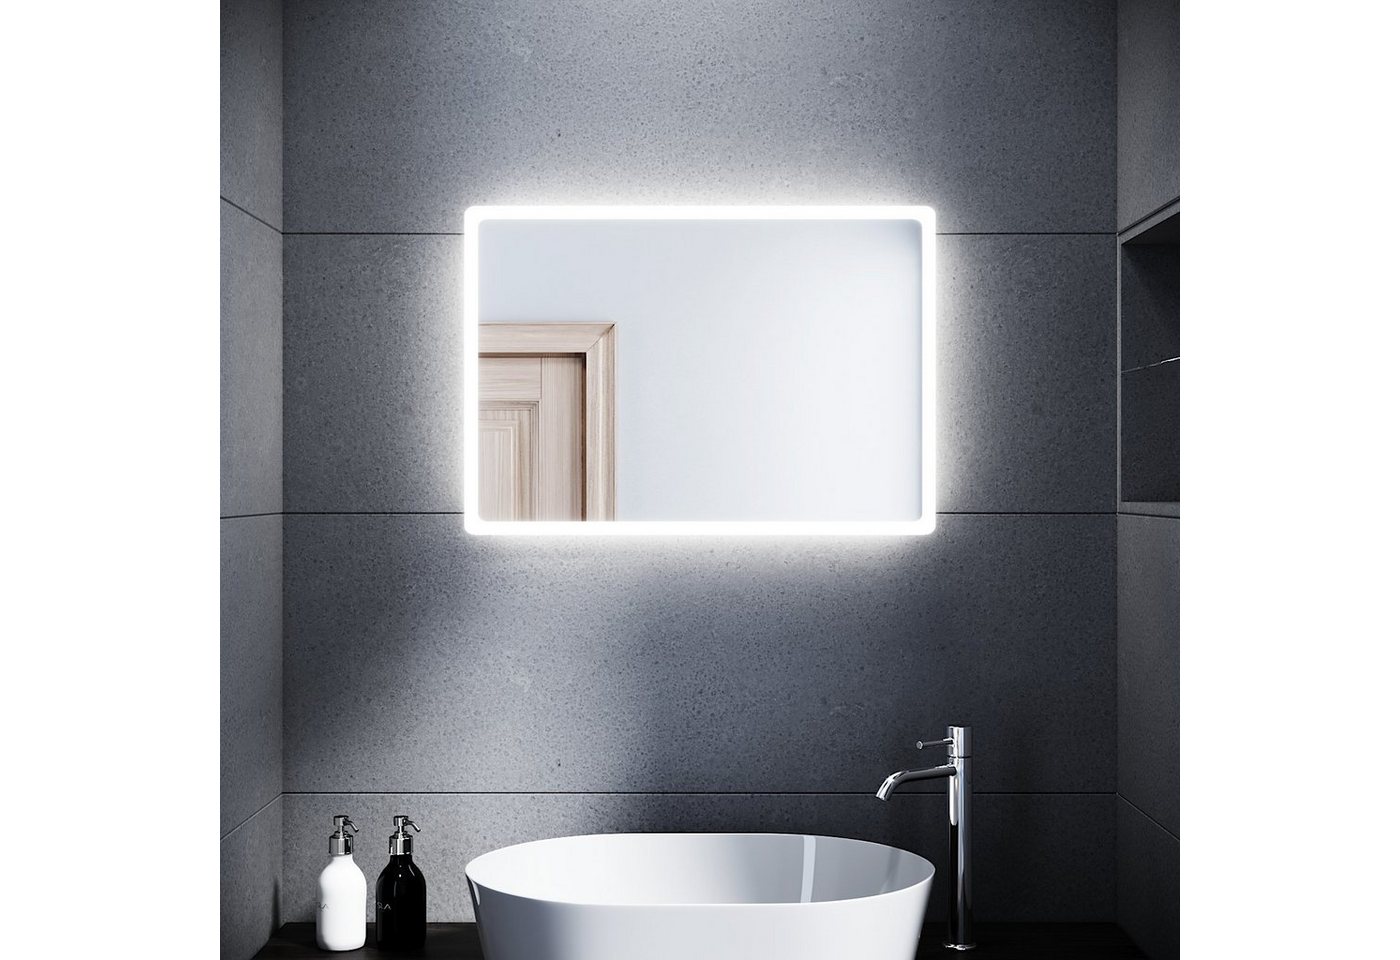 SONNI Badspiegel Badspiegel mit Beleuchtung 80 x 60 cm Wandspiegel Spiegel, Badezimmerspiegel kaltweiß IP44 Badezimmer Bad Spiegel von SONNI